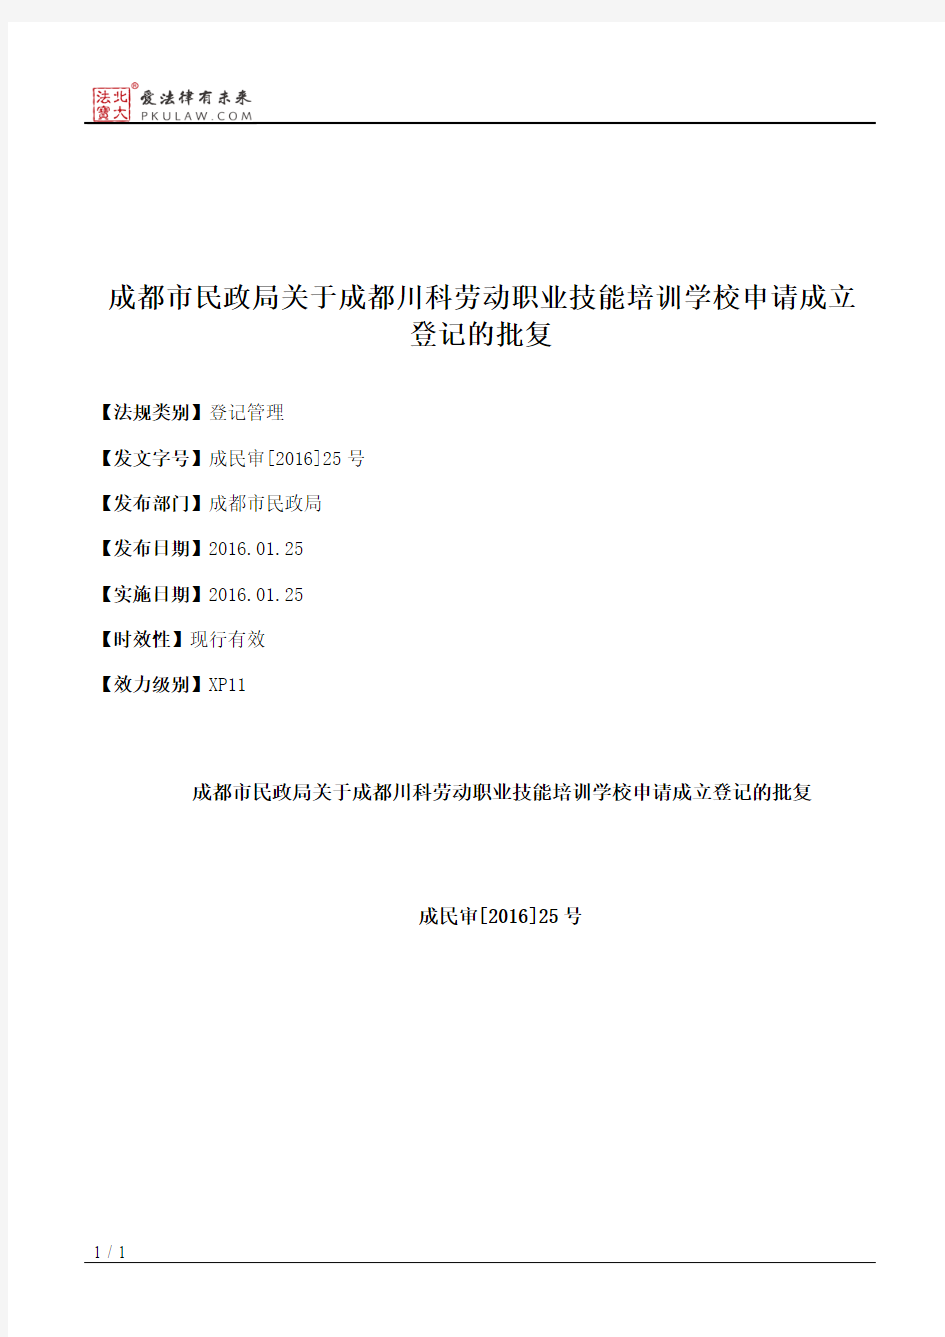 成都市民政局关于成都川科劳动职业技能培训学校申请成立登记的批复